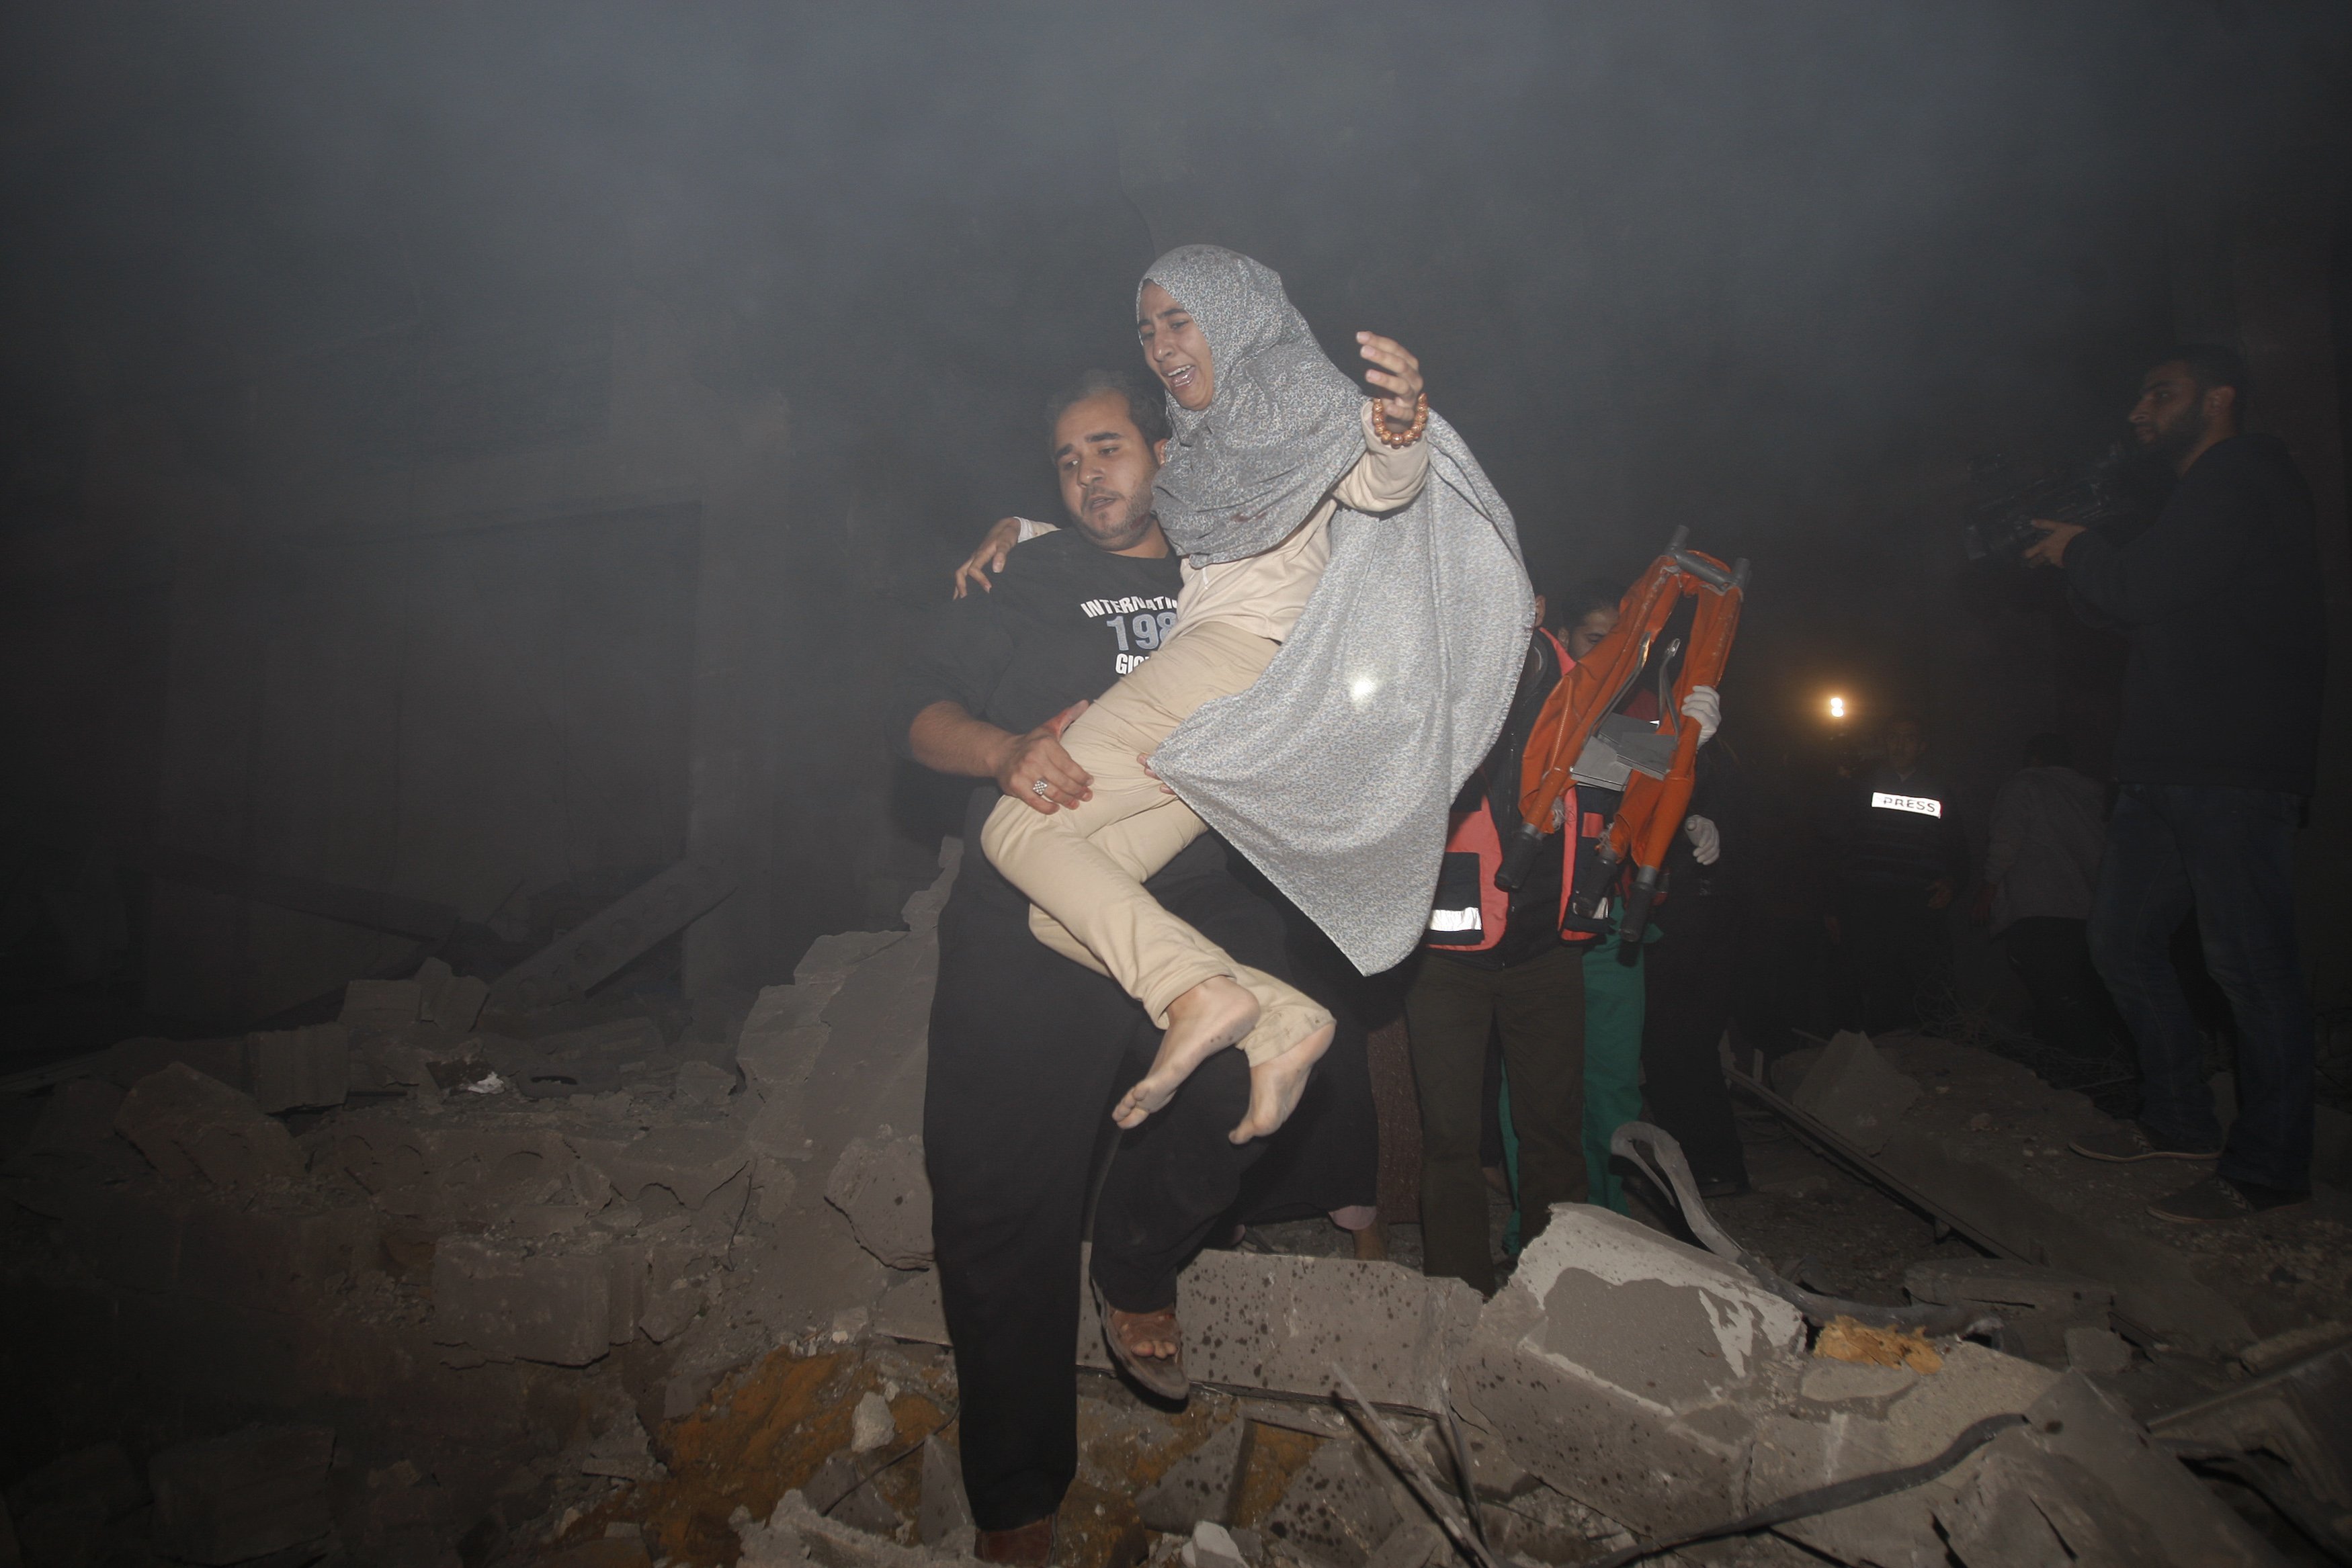 Ο πόλεμος μέσα από τα μάτια των ανθρώπων! Νεκρά βρέφη και τρομαγμένοι πολίτες της Παλαιστίνης και του Ισραήλ την ώρα των βομβαρδισμών